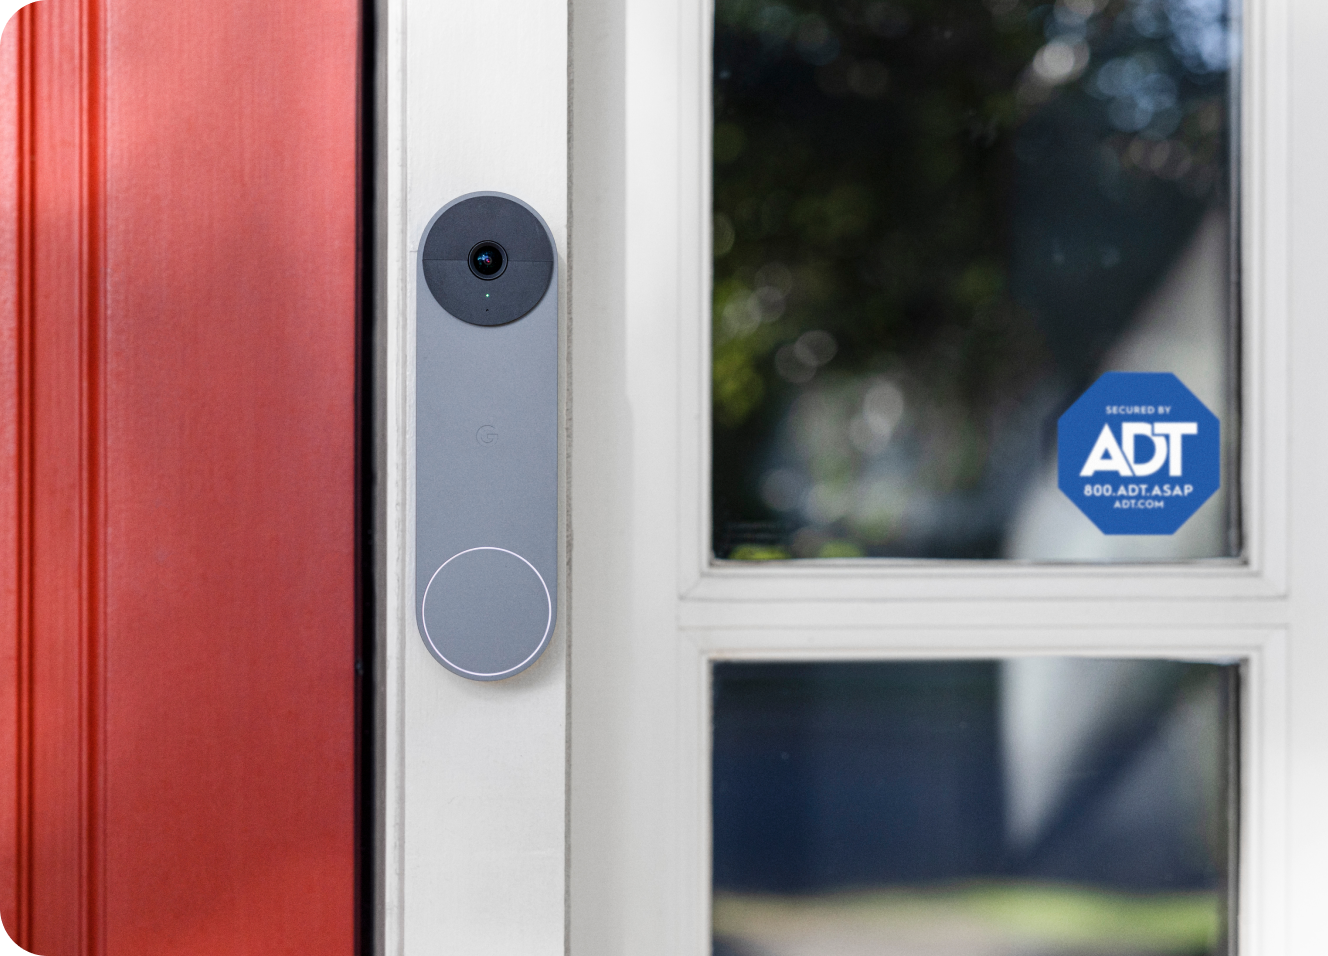 Grey Google Nest Doorbell on a frame next to an ADT window sticker